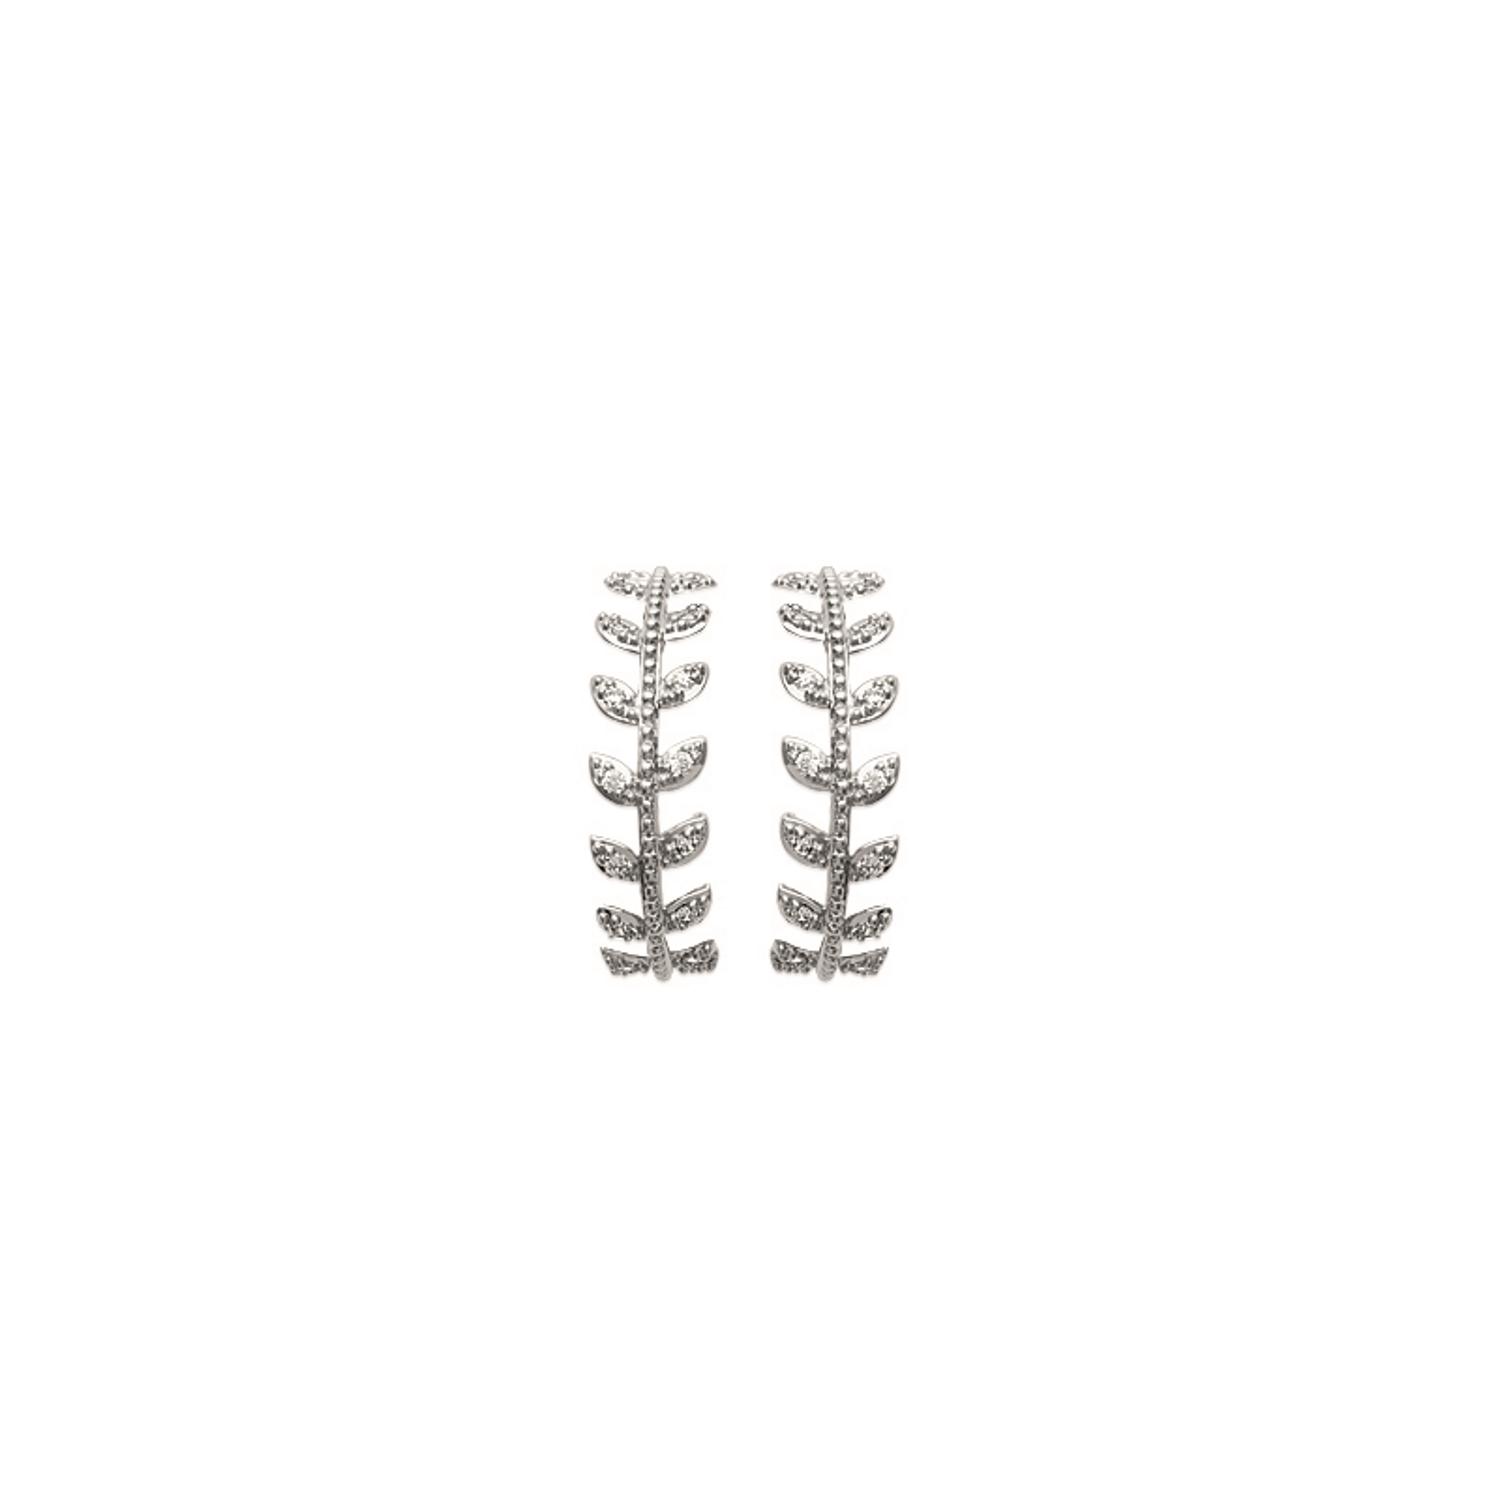 Boucles d'oreilles lauriers en argent 925/000 rhodié et oxyde de zirconium.  Laurier  Adolescent Adulte Femme Fille Indémodable Symboles 